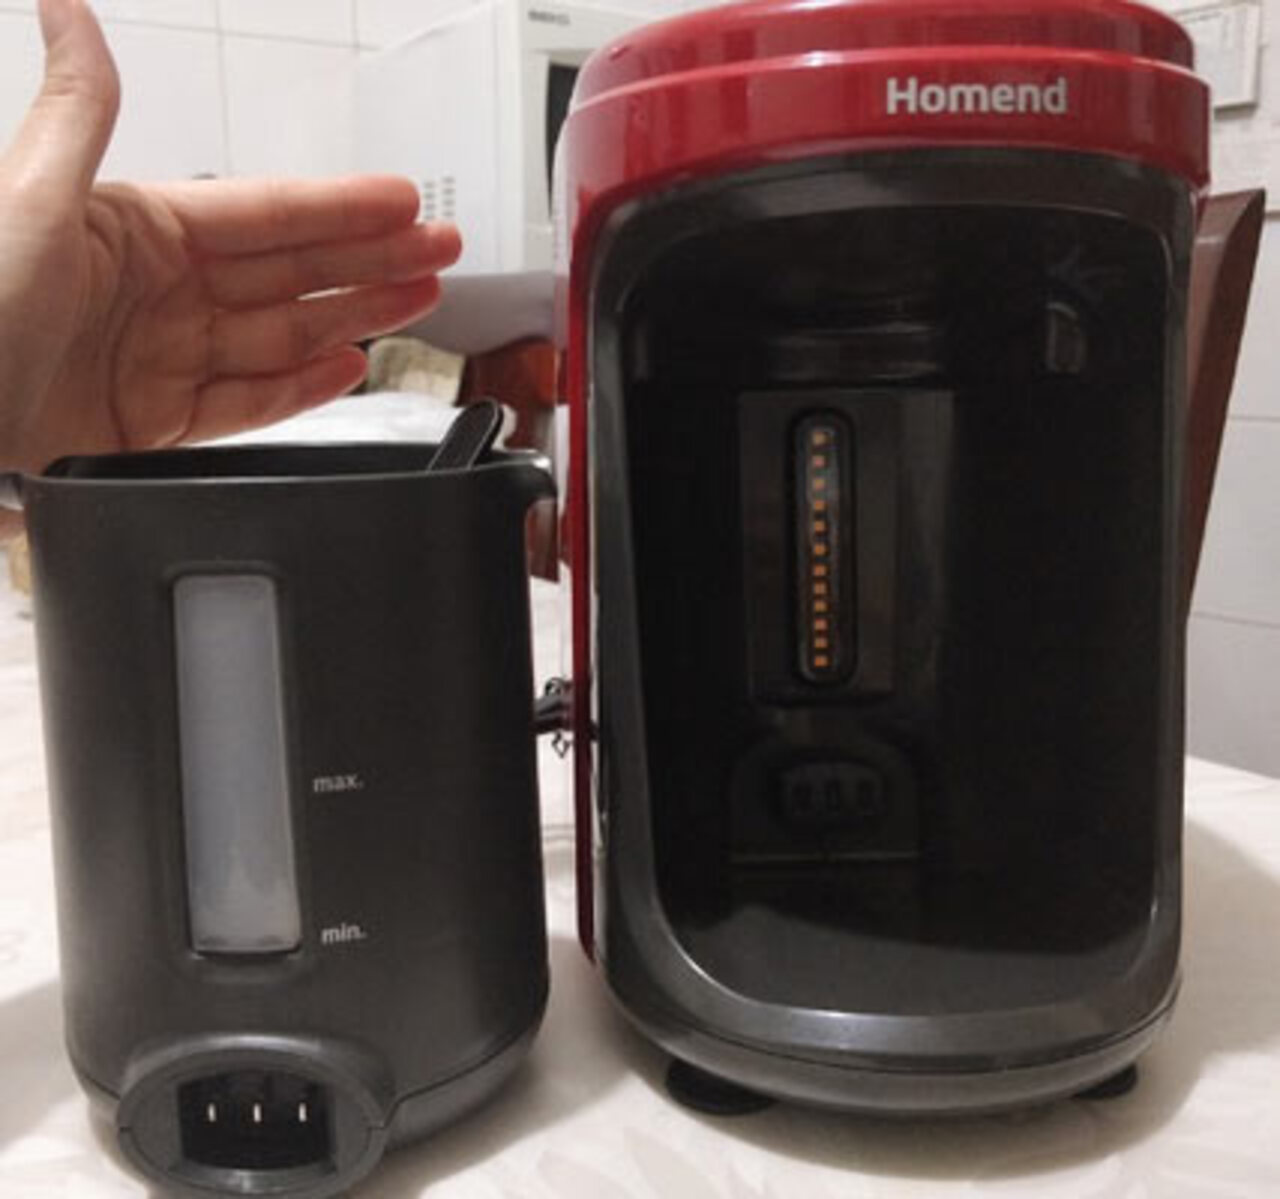 Şok Homend Pottoman Türk kahve makinesi nasıl, alınır mı? Kullanıcı yorumları